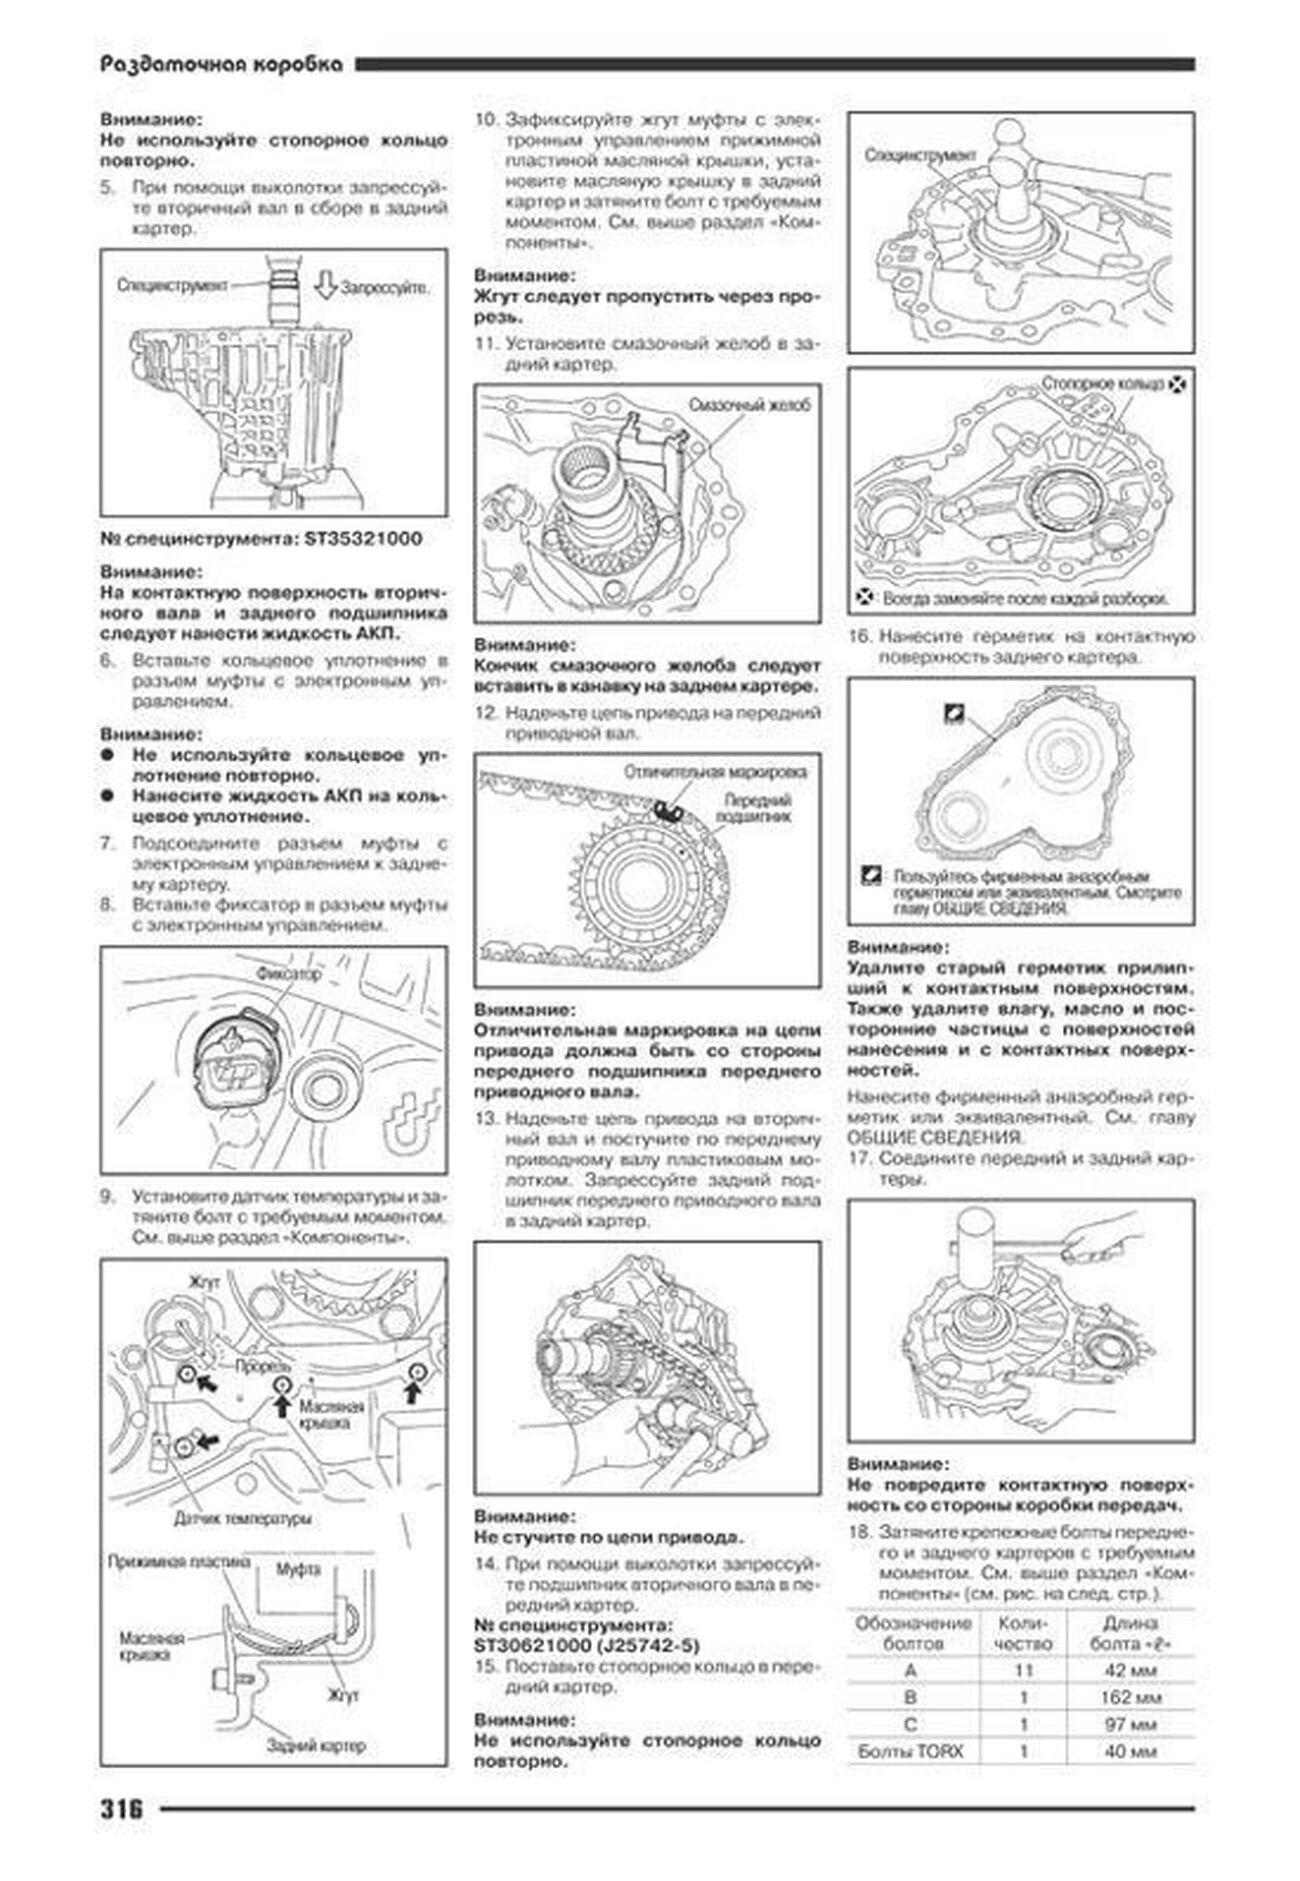 Книга: INFINITI  FX35 / FX45 (б) c 2003 г.в., рем., экспл., то | Автонавигатор